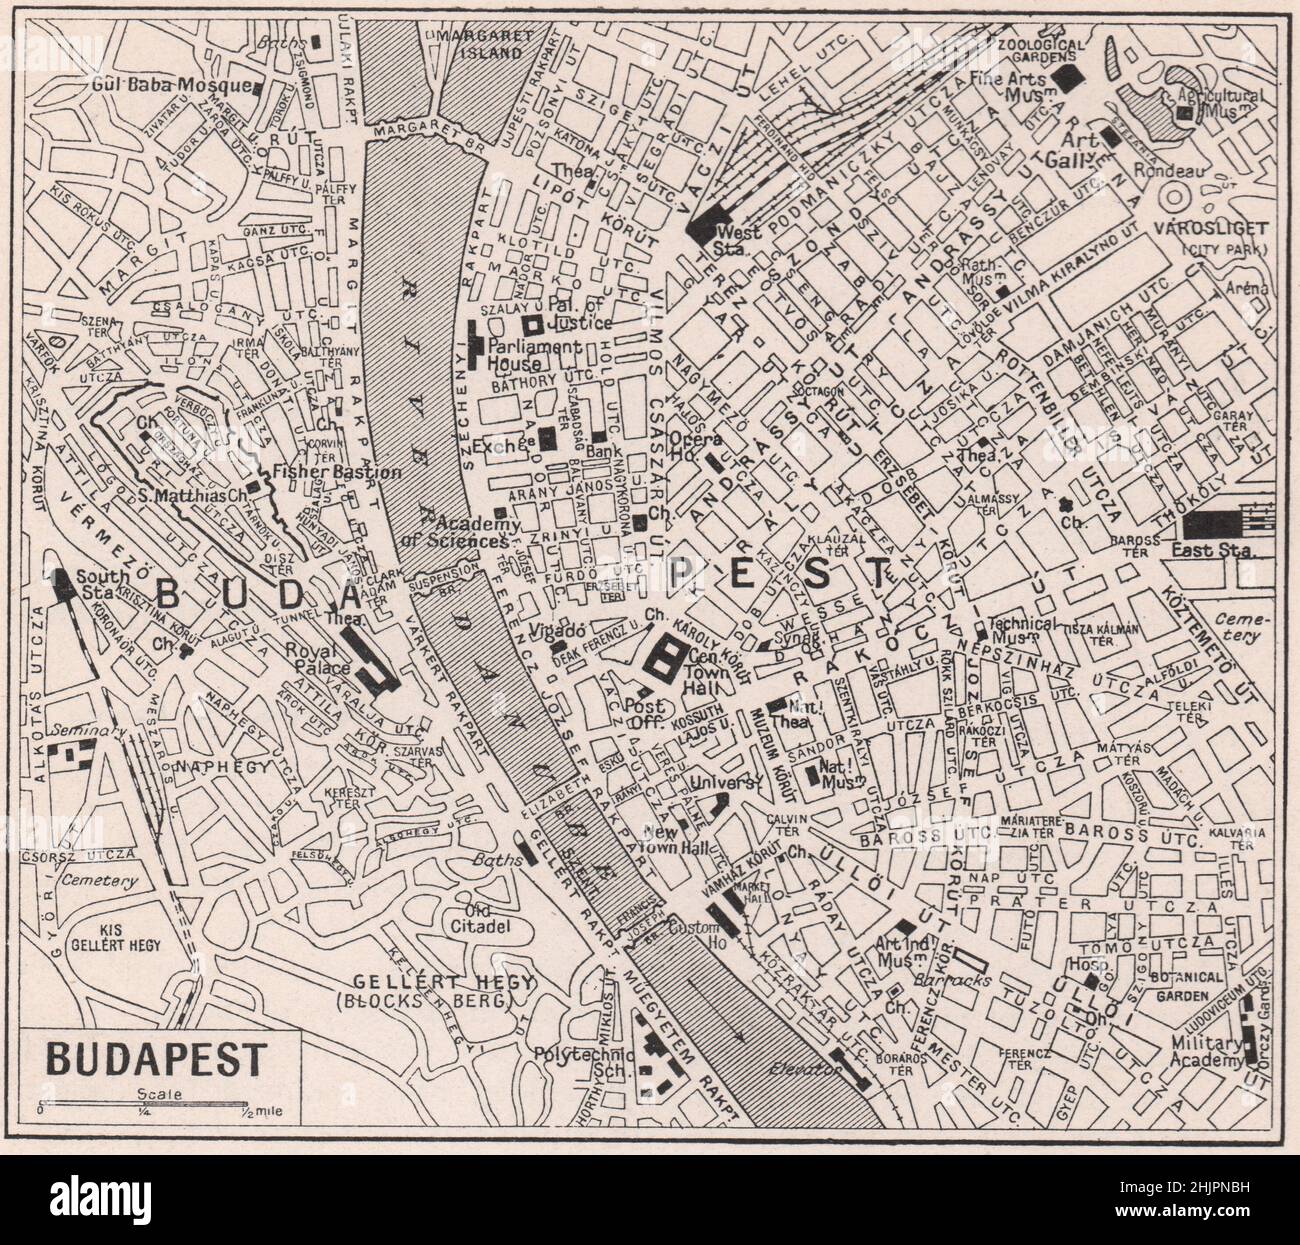 Ciudades gemelas de Buda y plagas divididas por el Danubio. Hungría. Budapest (1923 mapa) Foto de stock